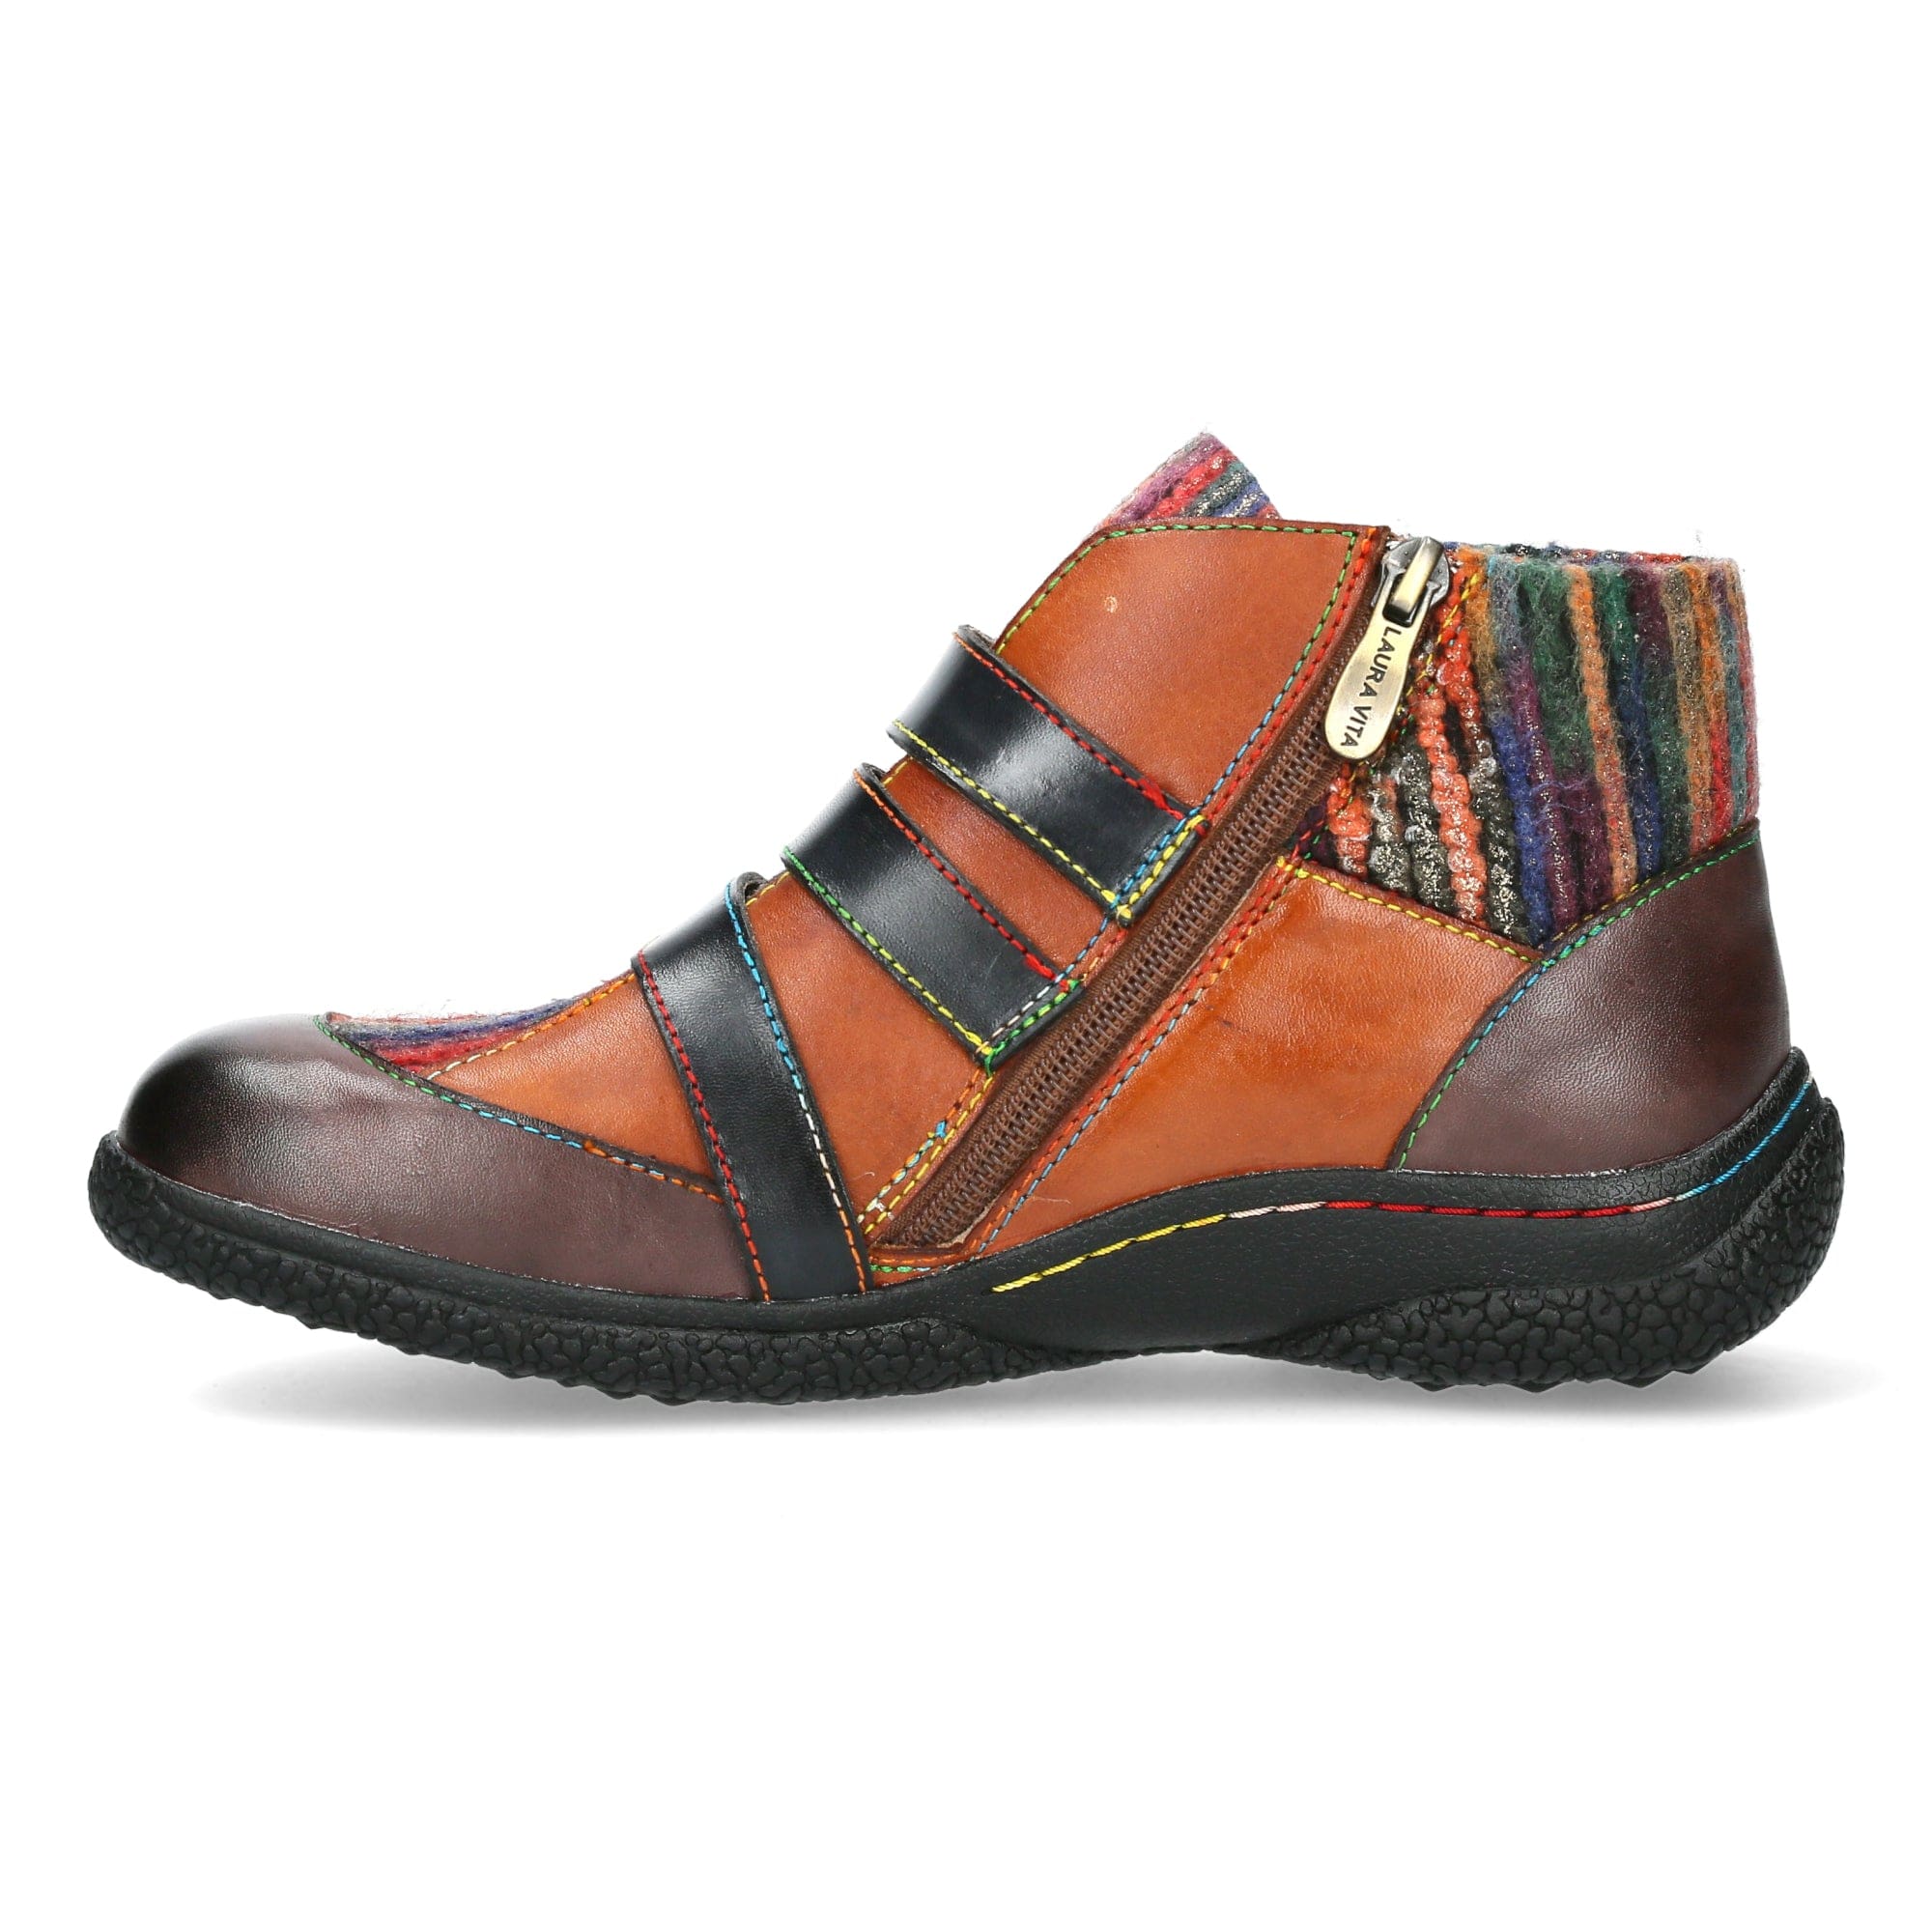 Schuh GOCTHO 06 - Boots